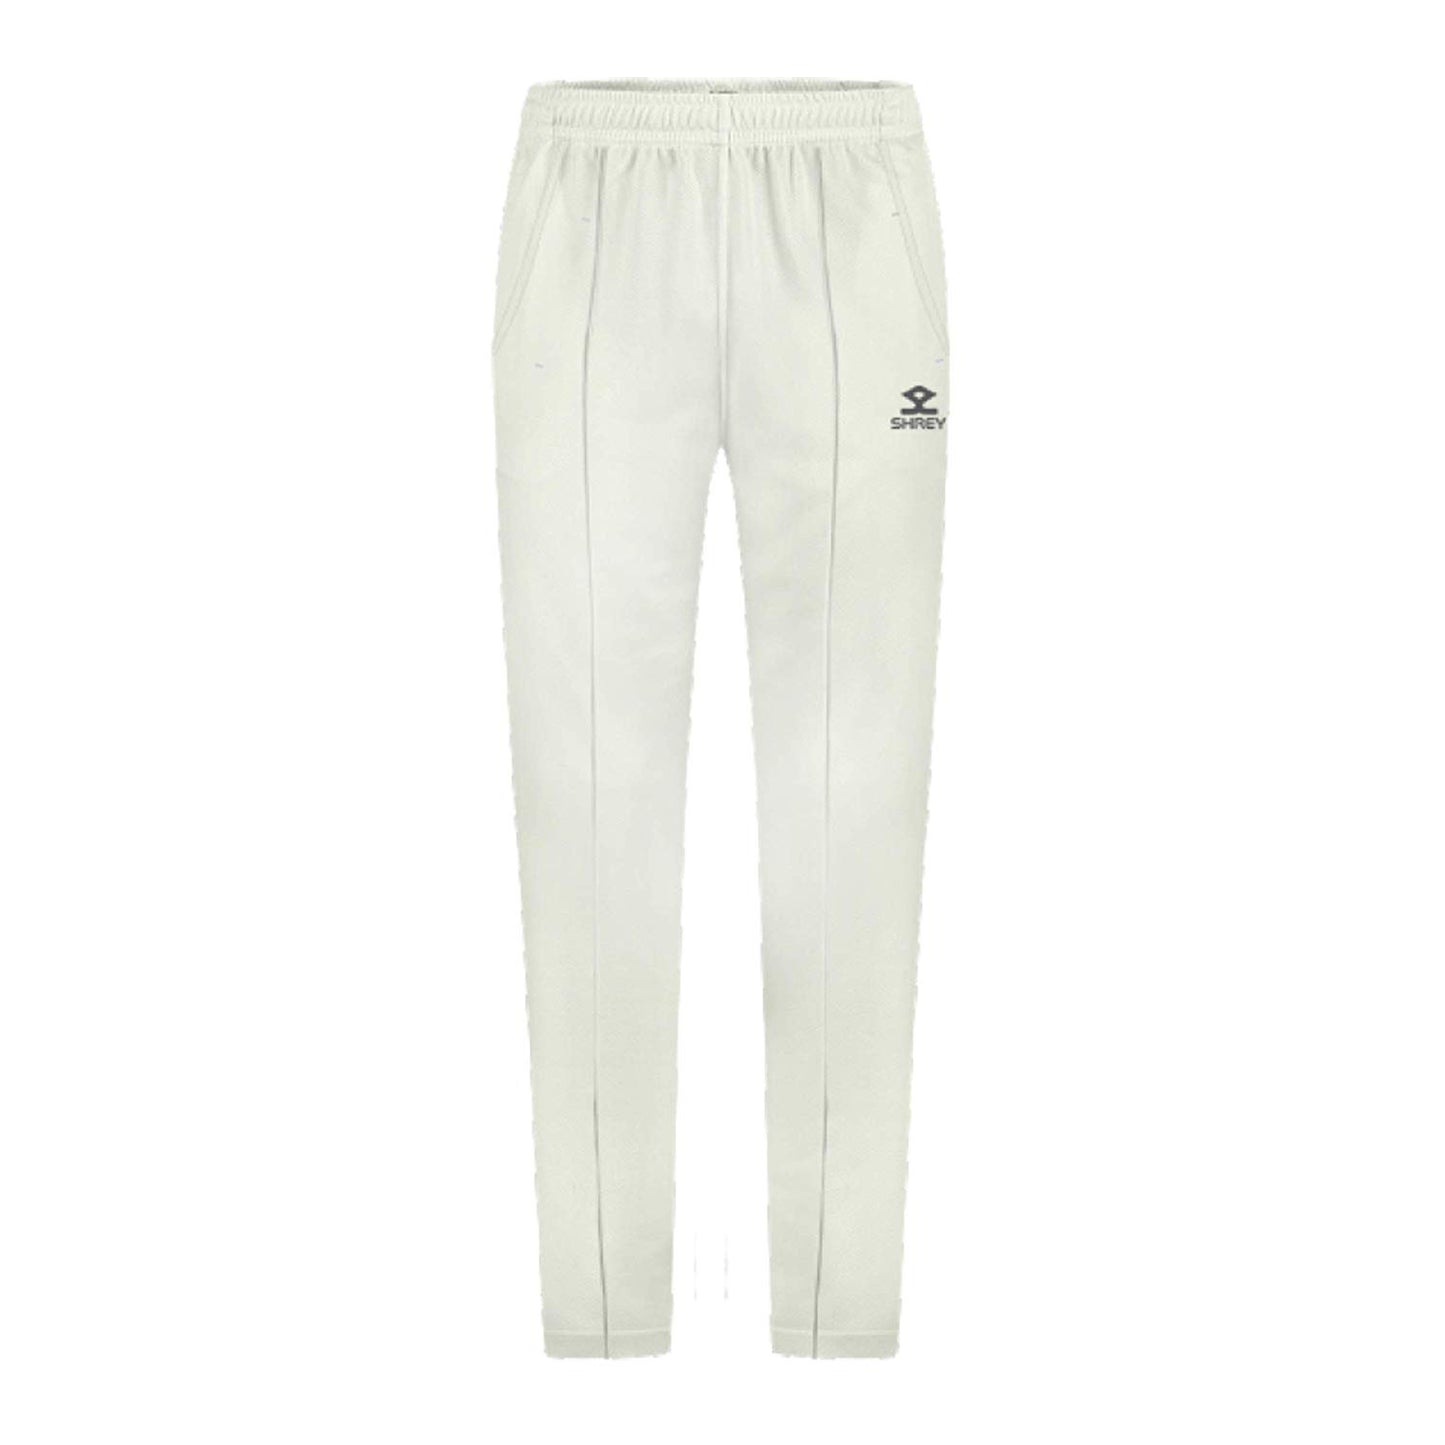 Shrey Match Cricket Trouser for Juniors - Best Price online Prokicksports.com